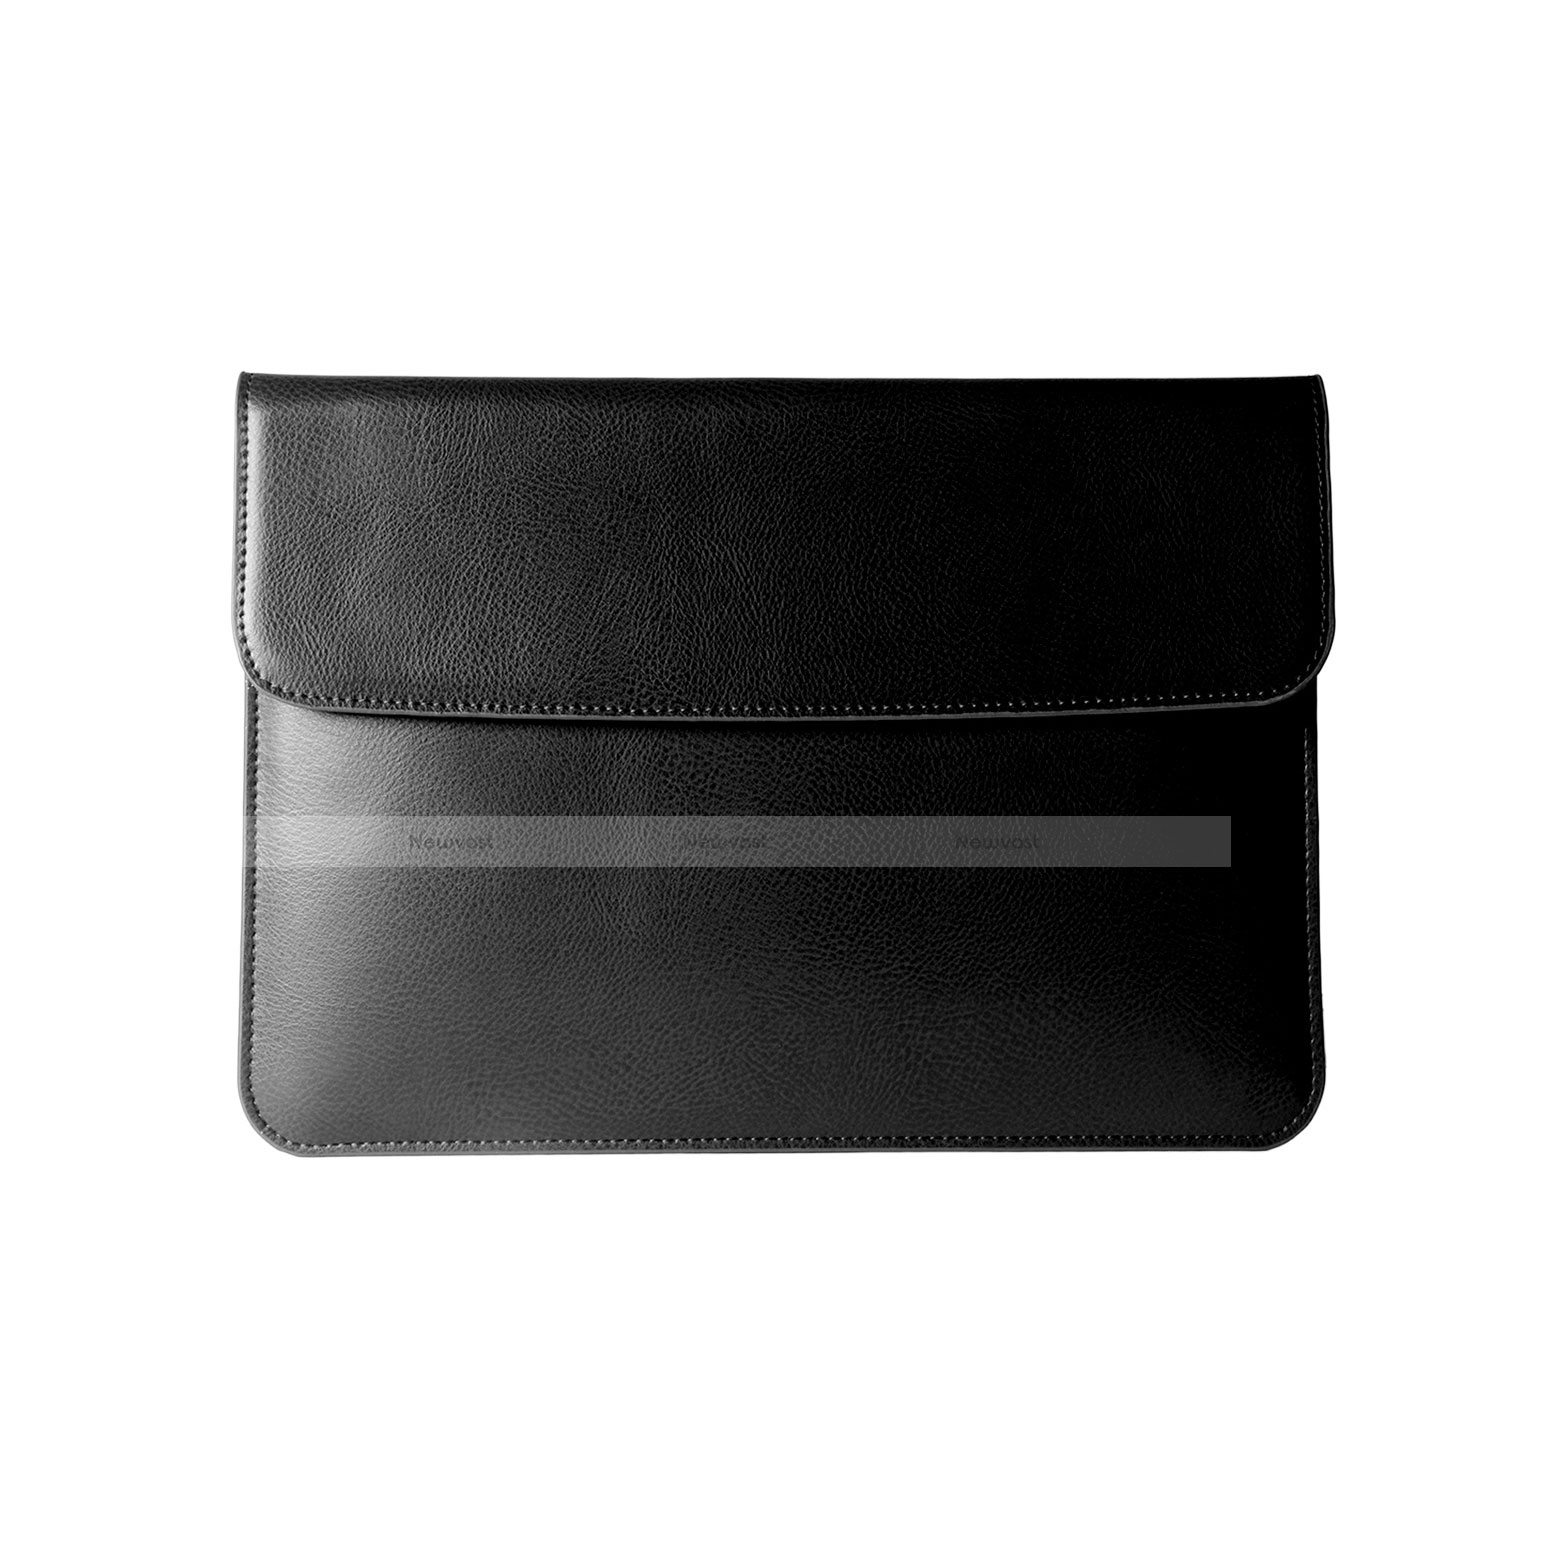 Sleeve Velvet Bag Leather Case Pocket L05 for Apple MacBook Pro 13 inch Retina